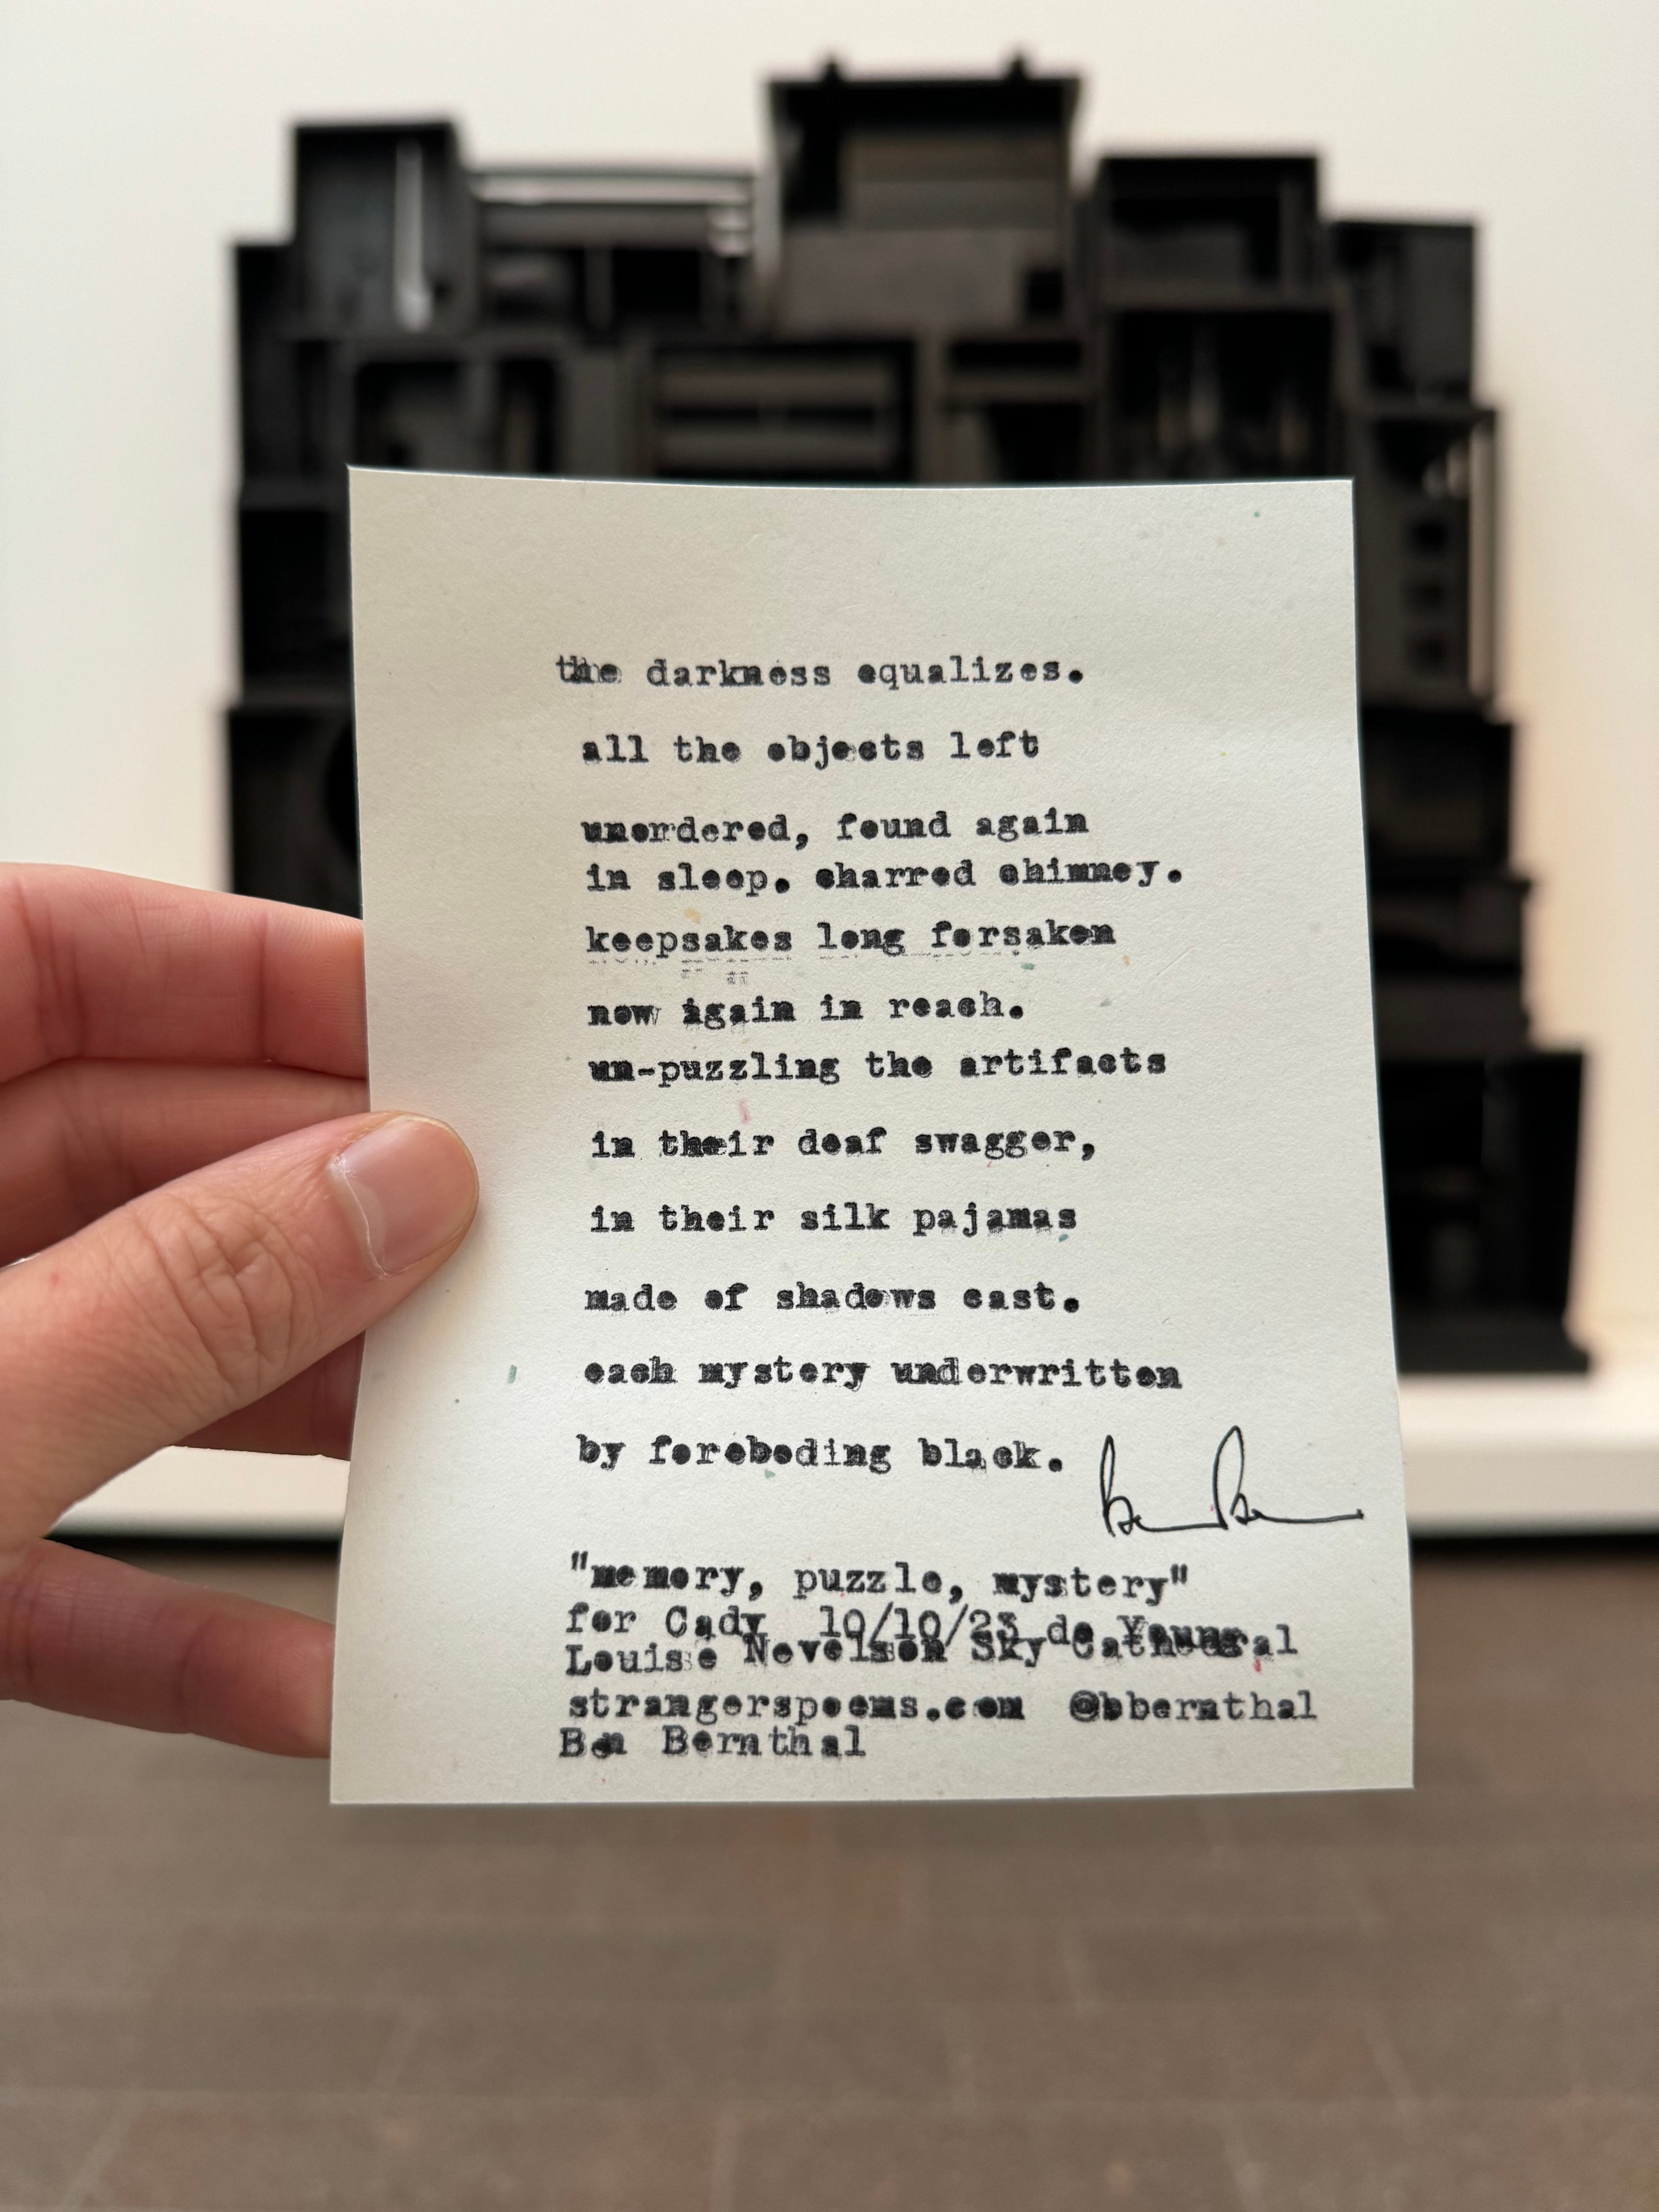 Typewritten poem by Ben Bernthal